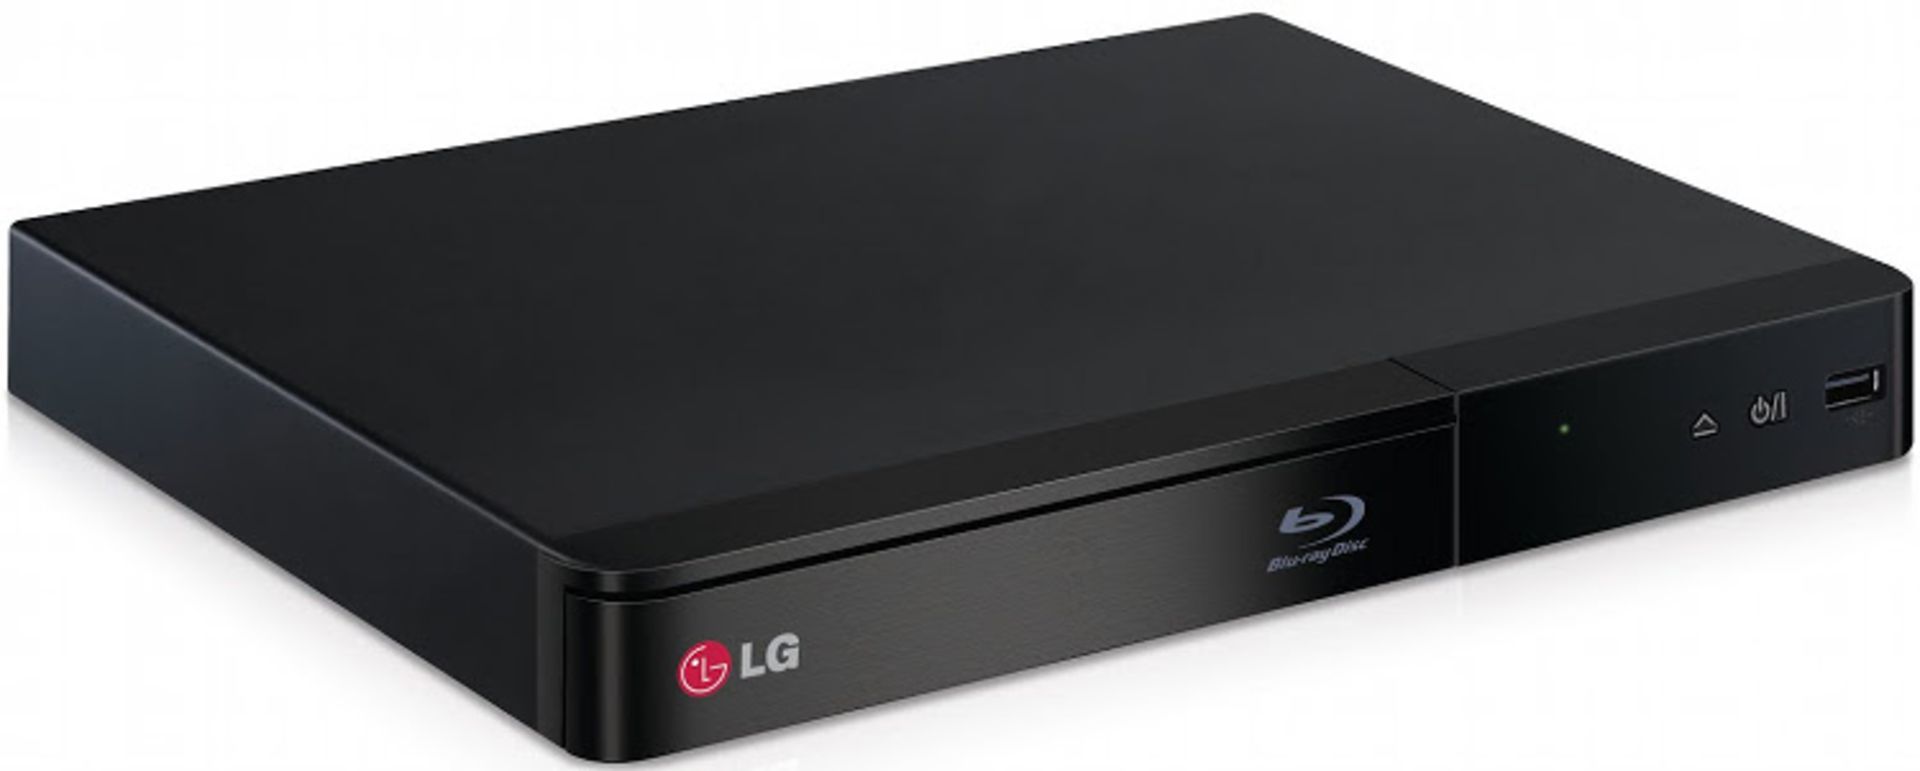 V Grade B LG BP240 Blu-Ray Player - Full HD 1080p Upscaling - USB X 2 YOUR BID PRICE TO BE